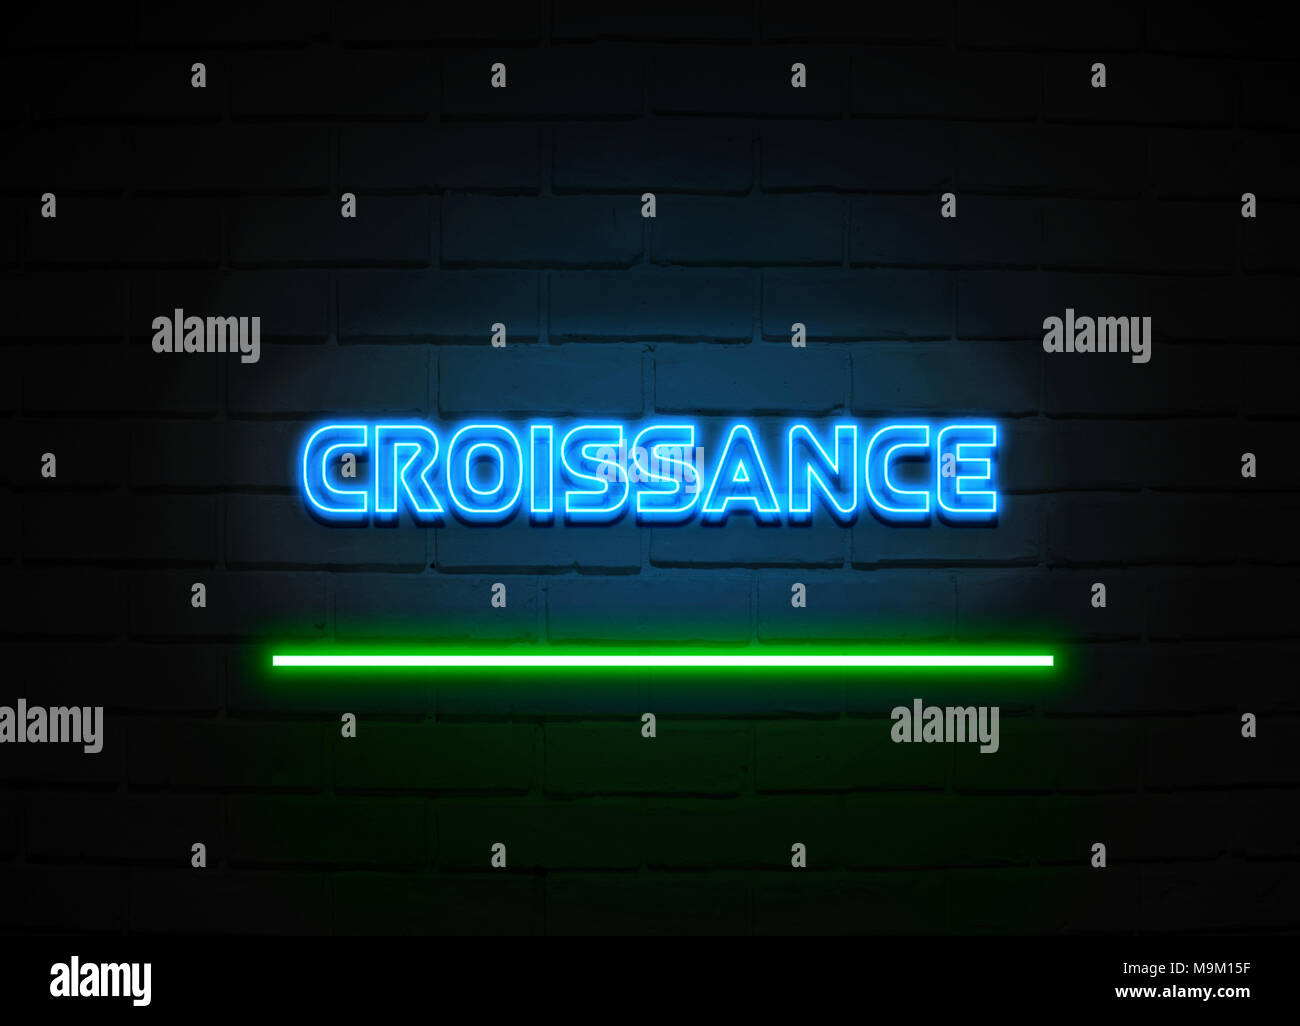 Croissance Leuchtreklame - glühende Leuchtreklame auf brickwall Wand - 3D-Royalty Free Stock Illustration dargestellt. Stockfoto